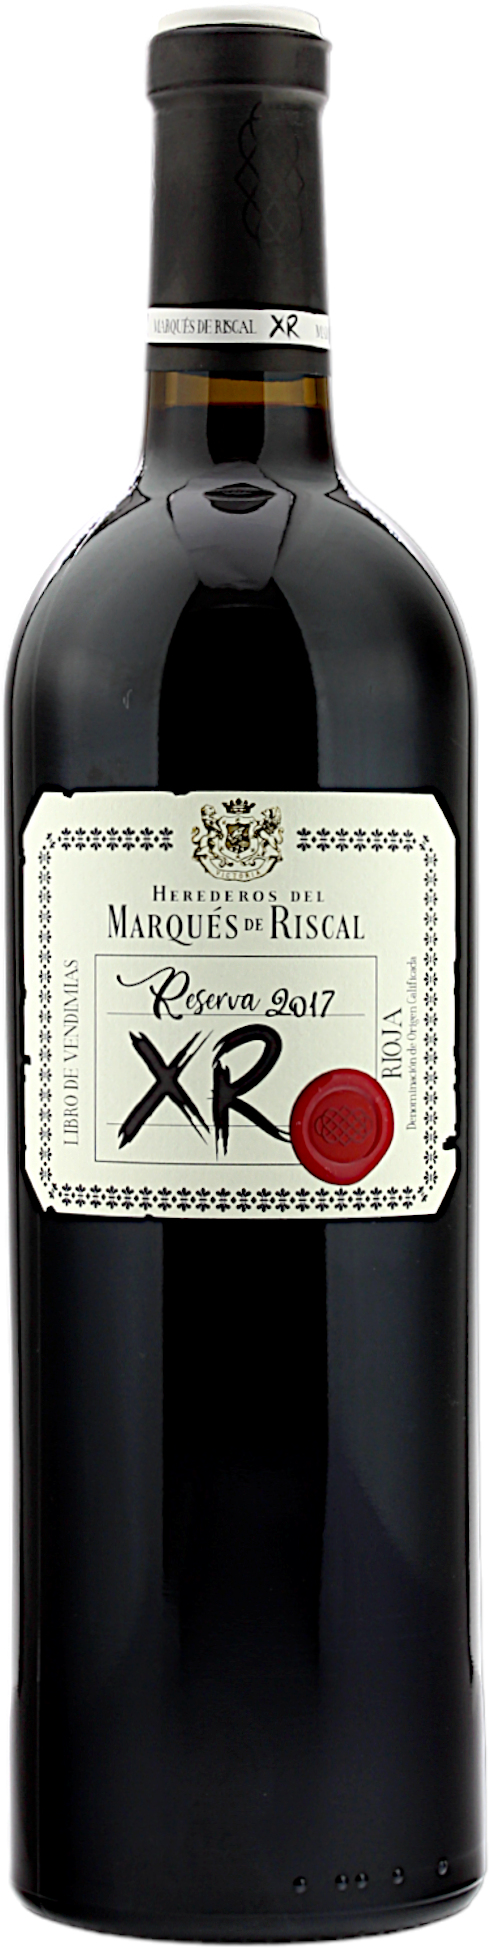 Reserva XR Marqués DOC La de 2017 Rioja Riscal